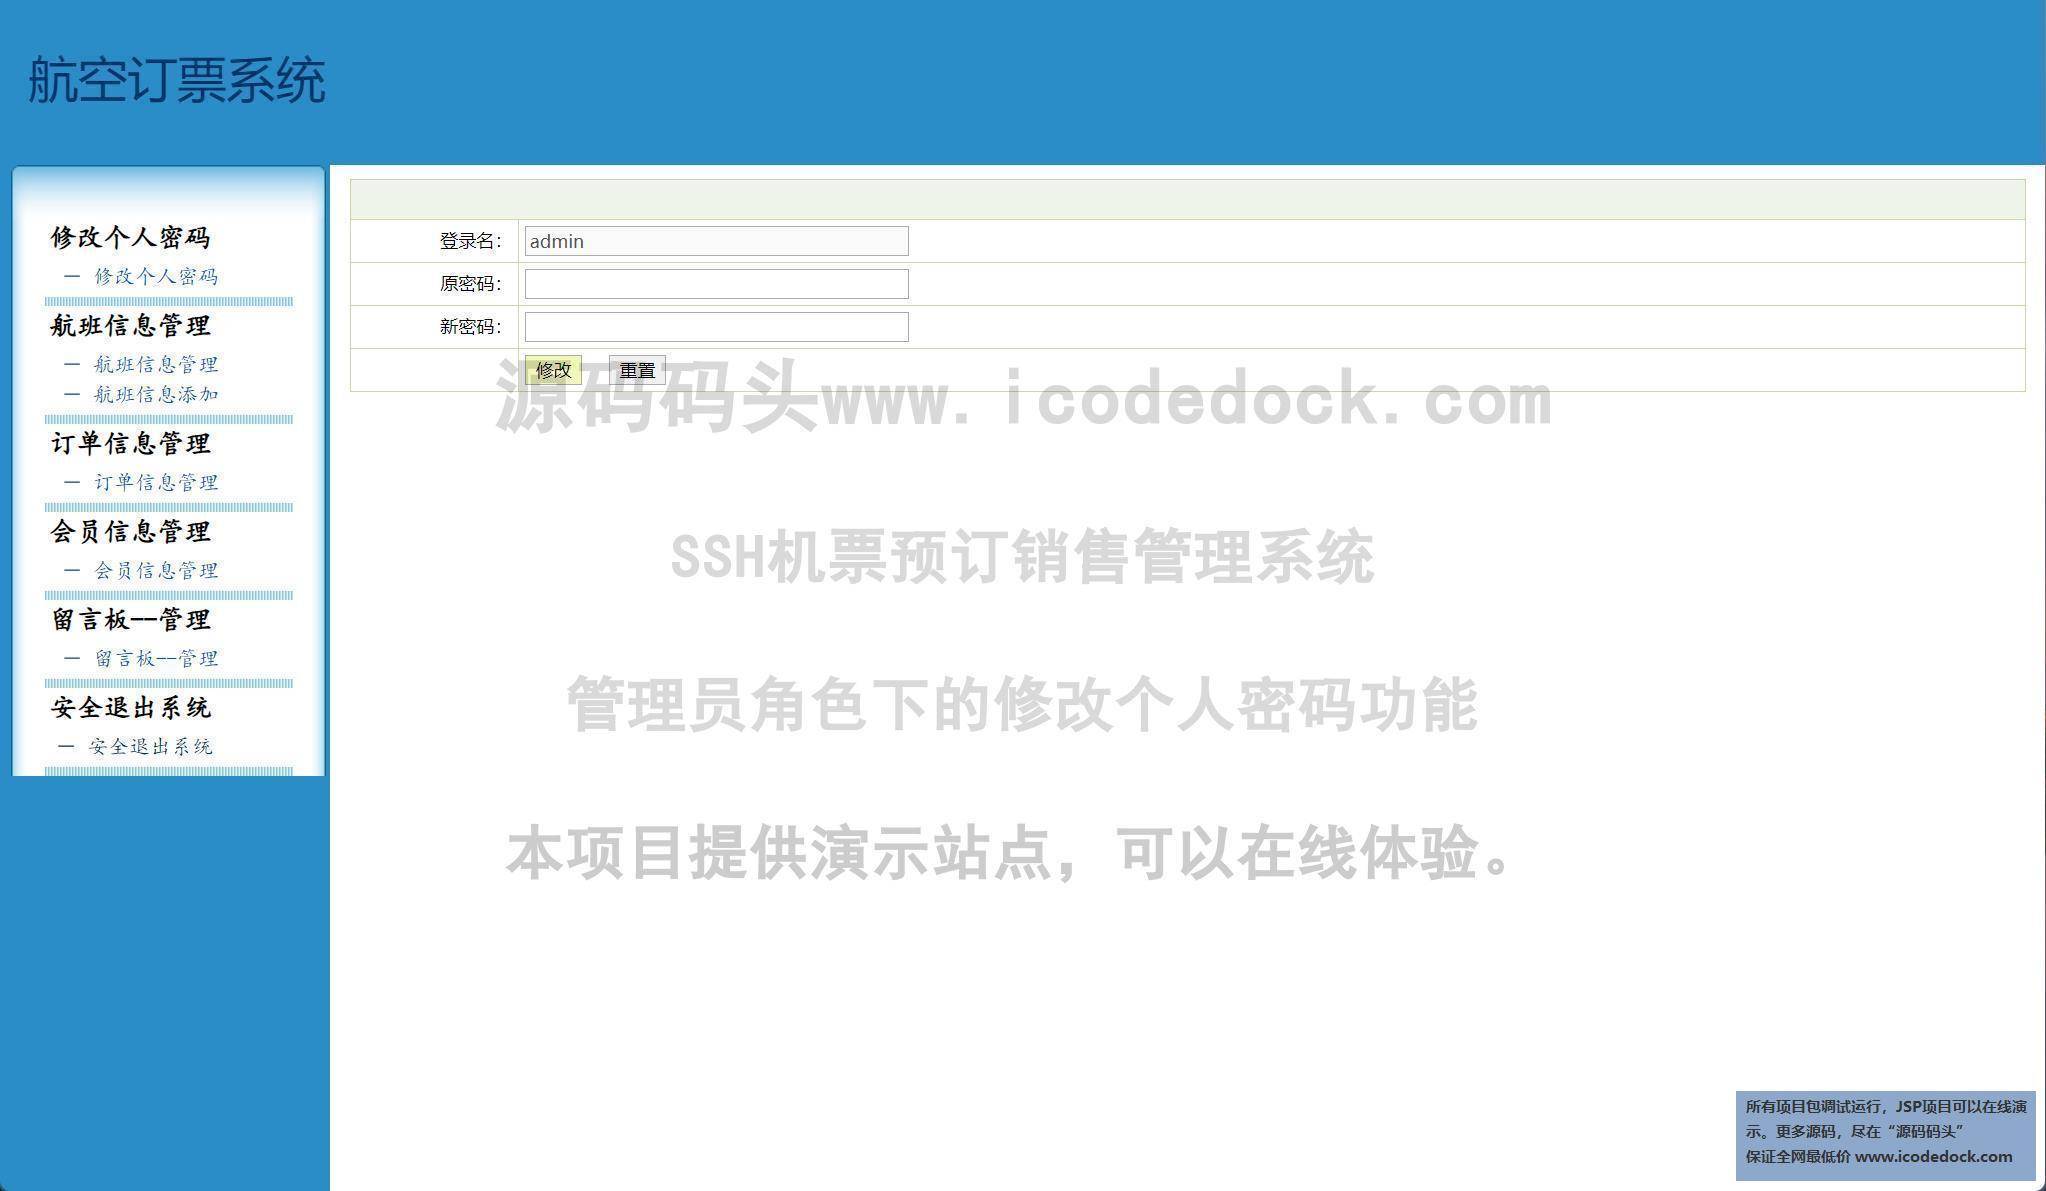 源码码头-SSH机票预订销售管理系统-管理员角色-修改个人密码